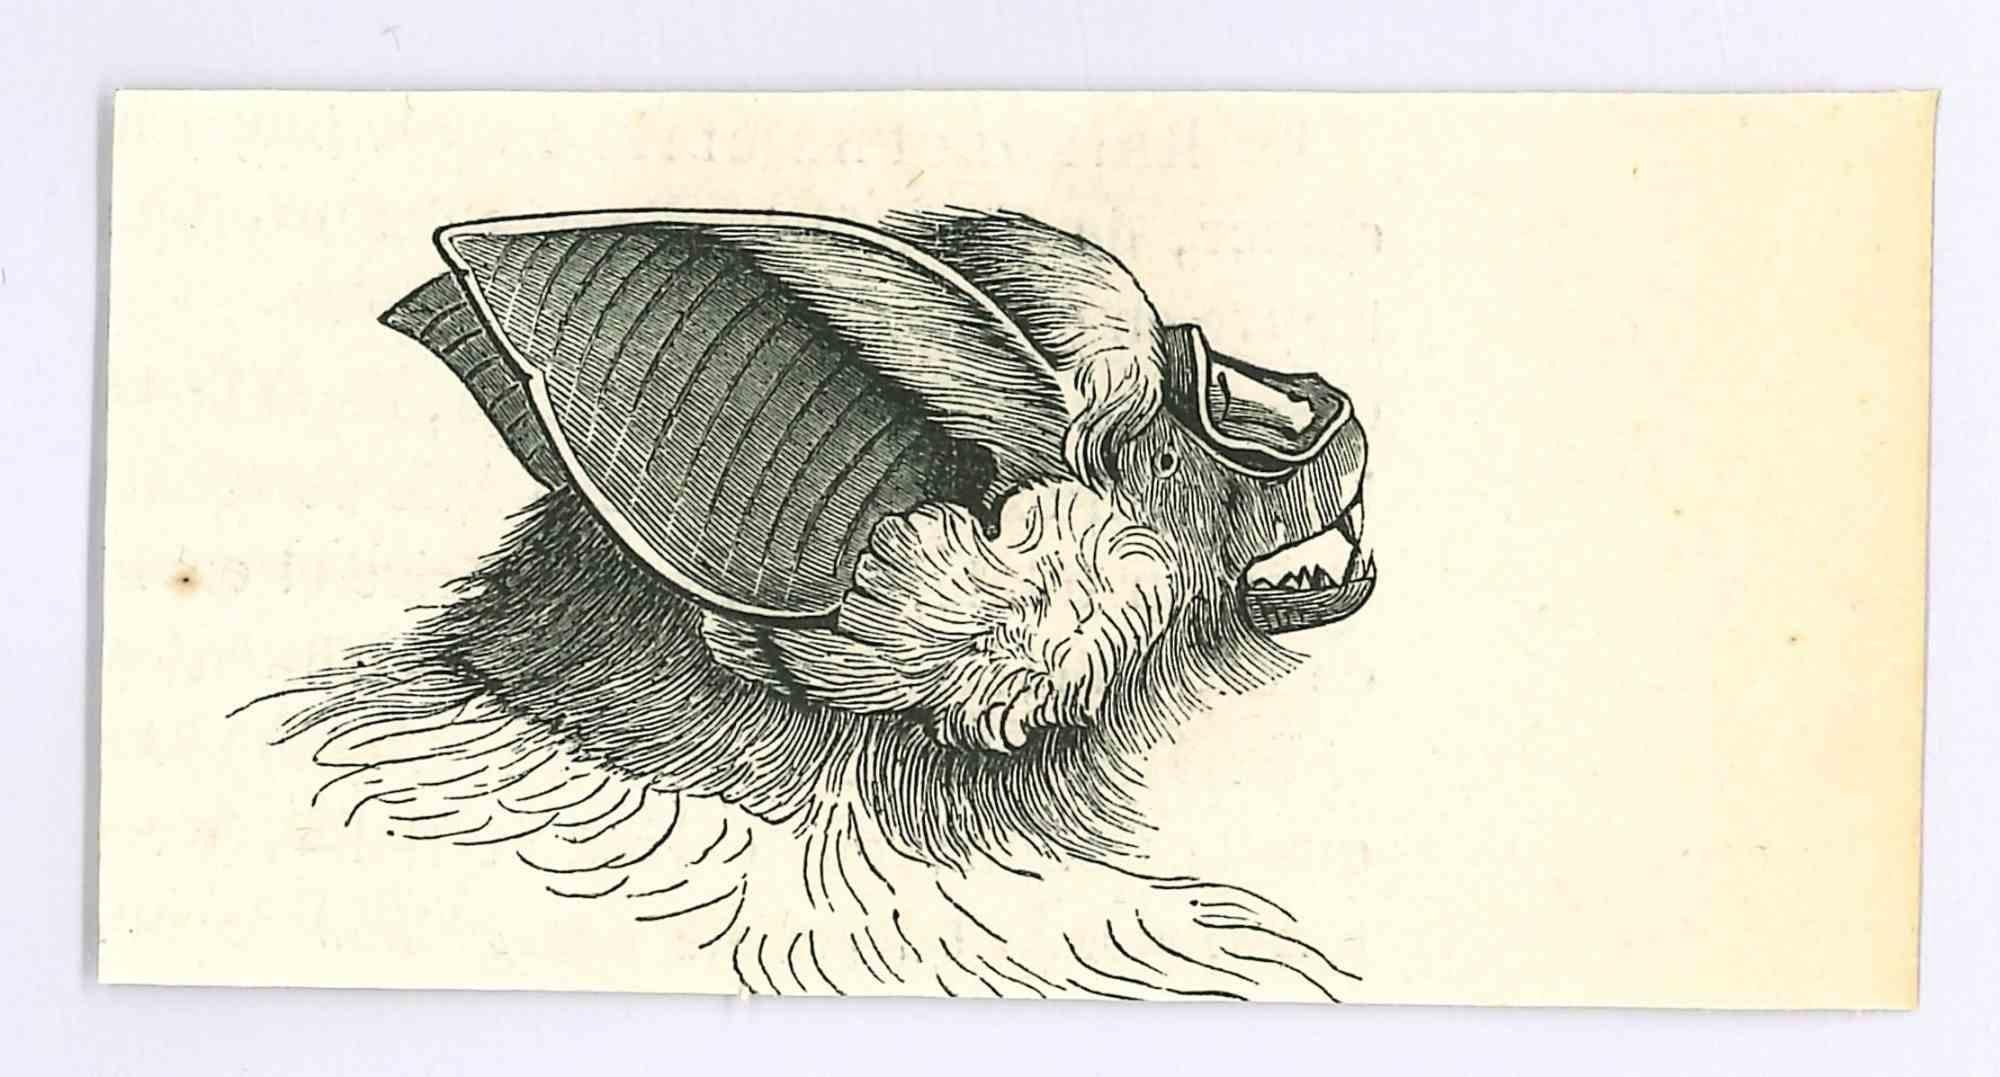 The Bat – Lithographie von Paul Gervais, 1854